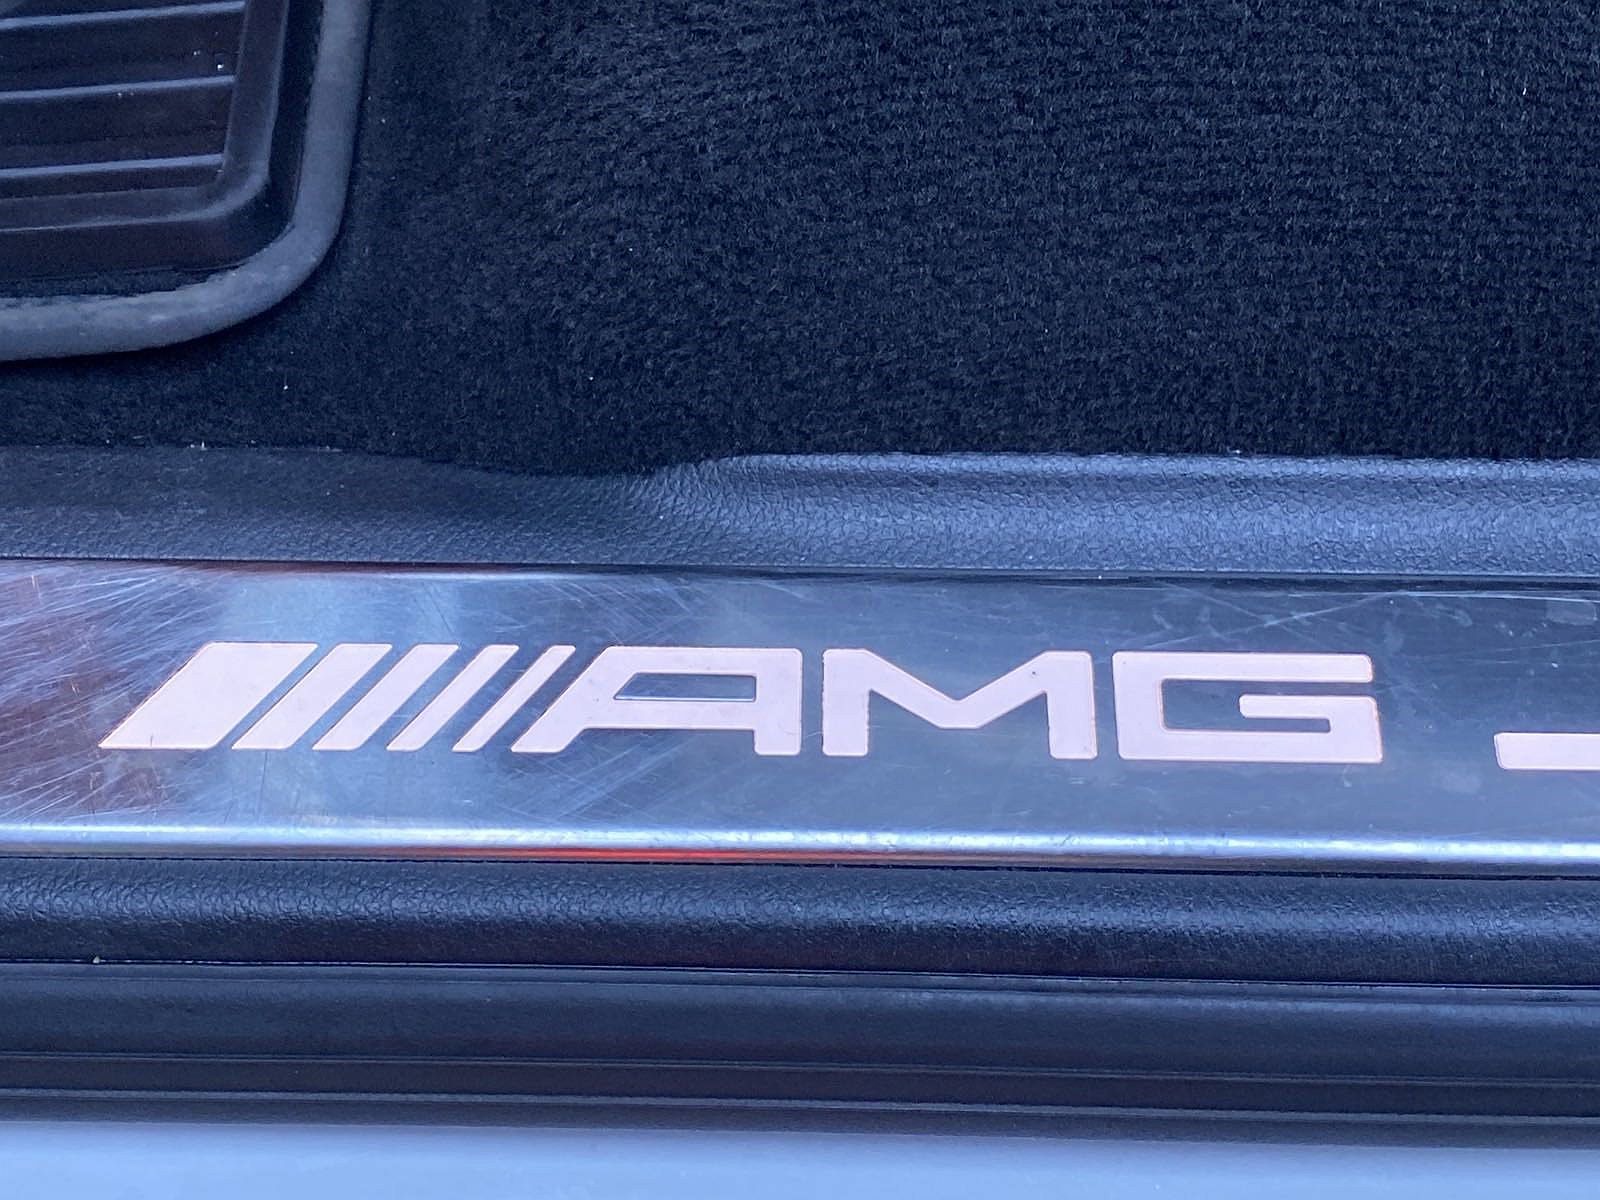 2021 Mercedes-Benz G-Class AMG G 63 image 27